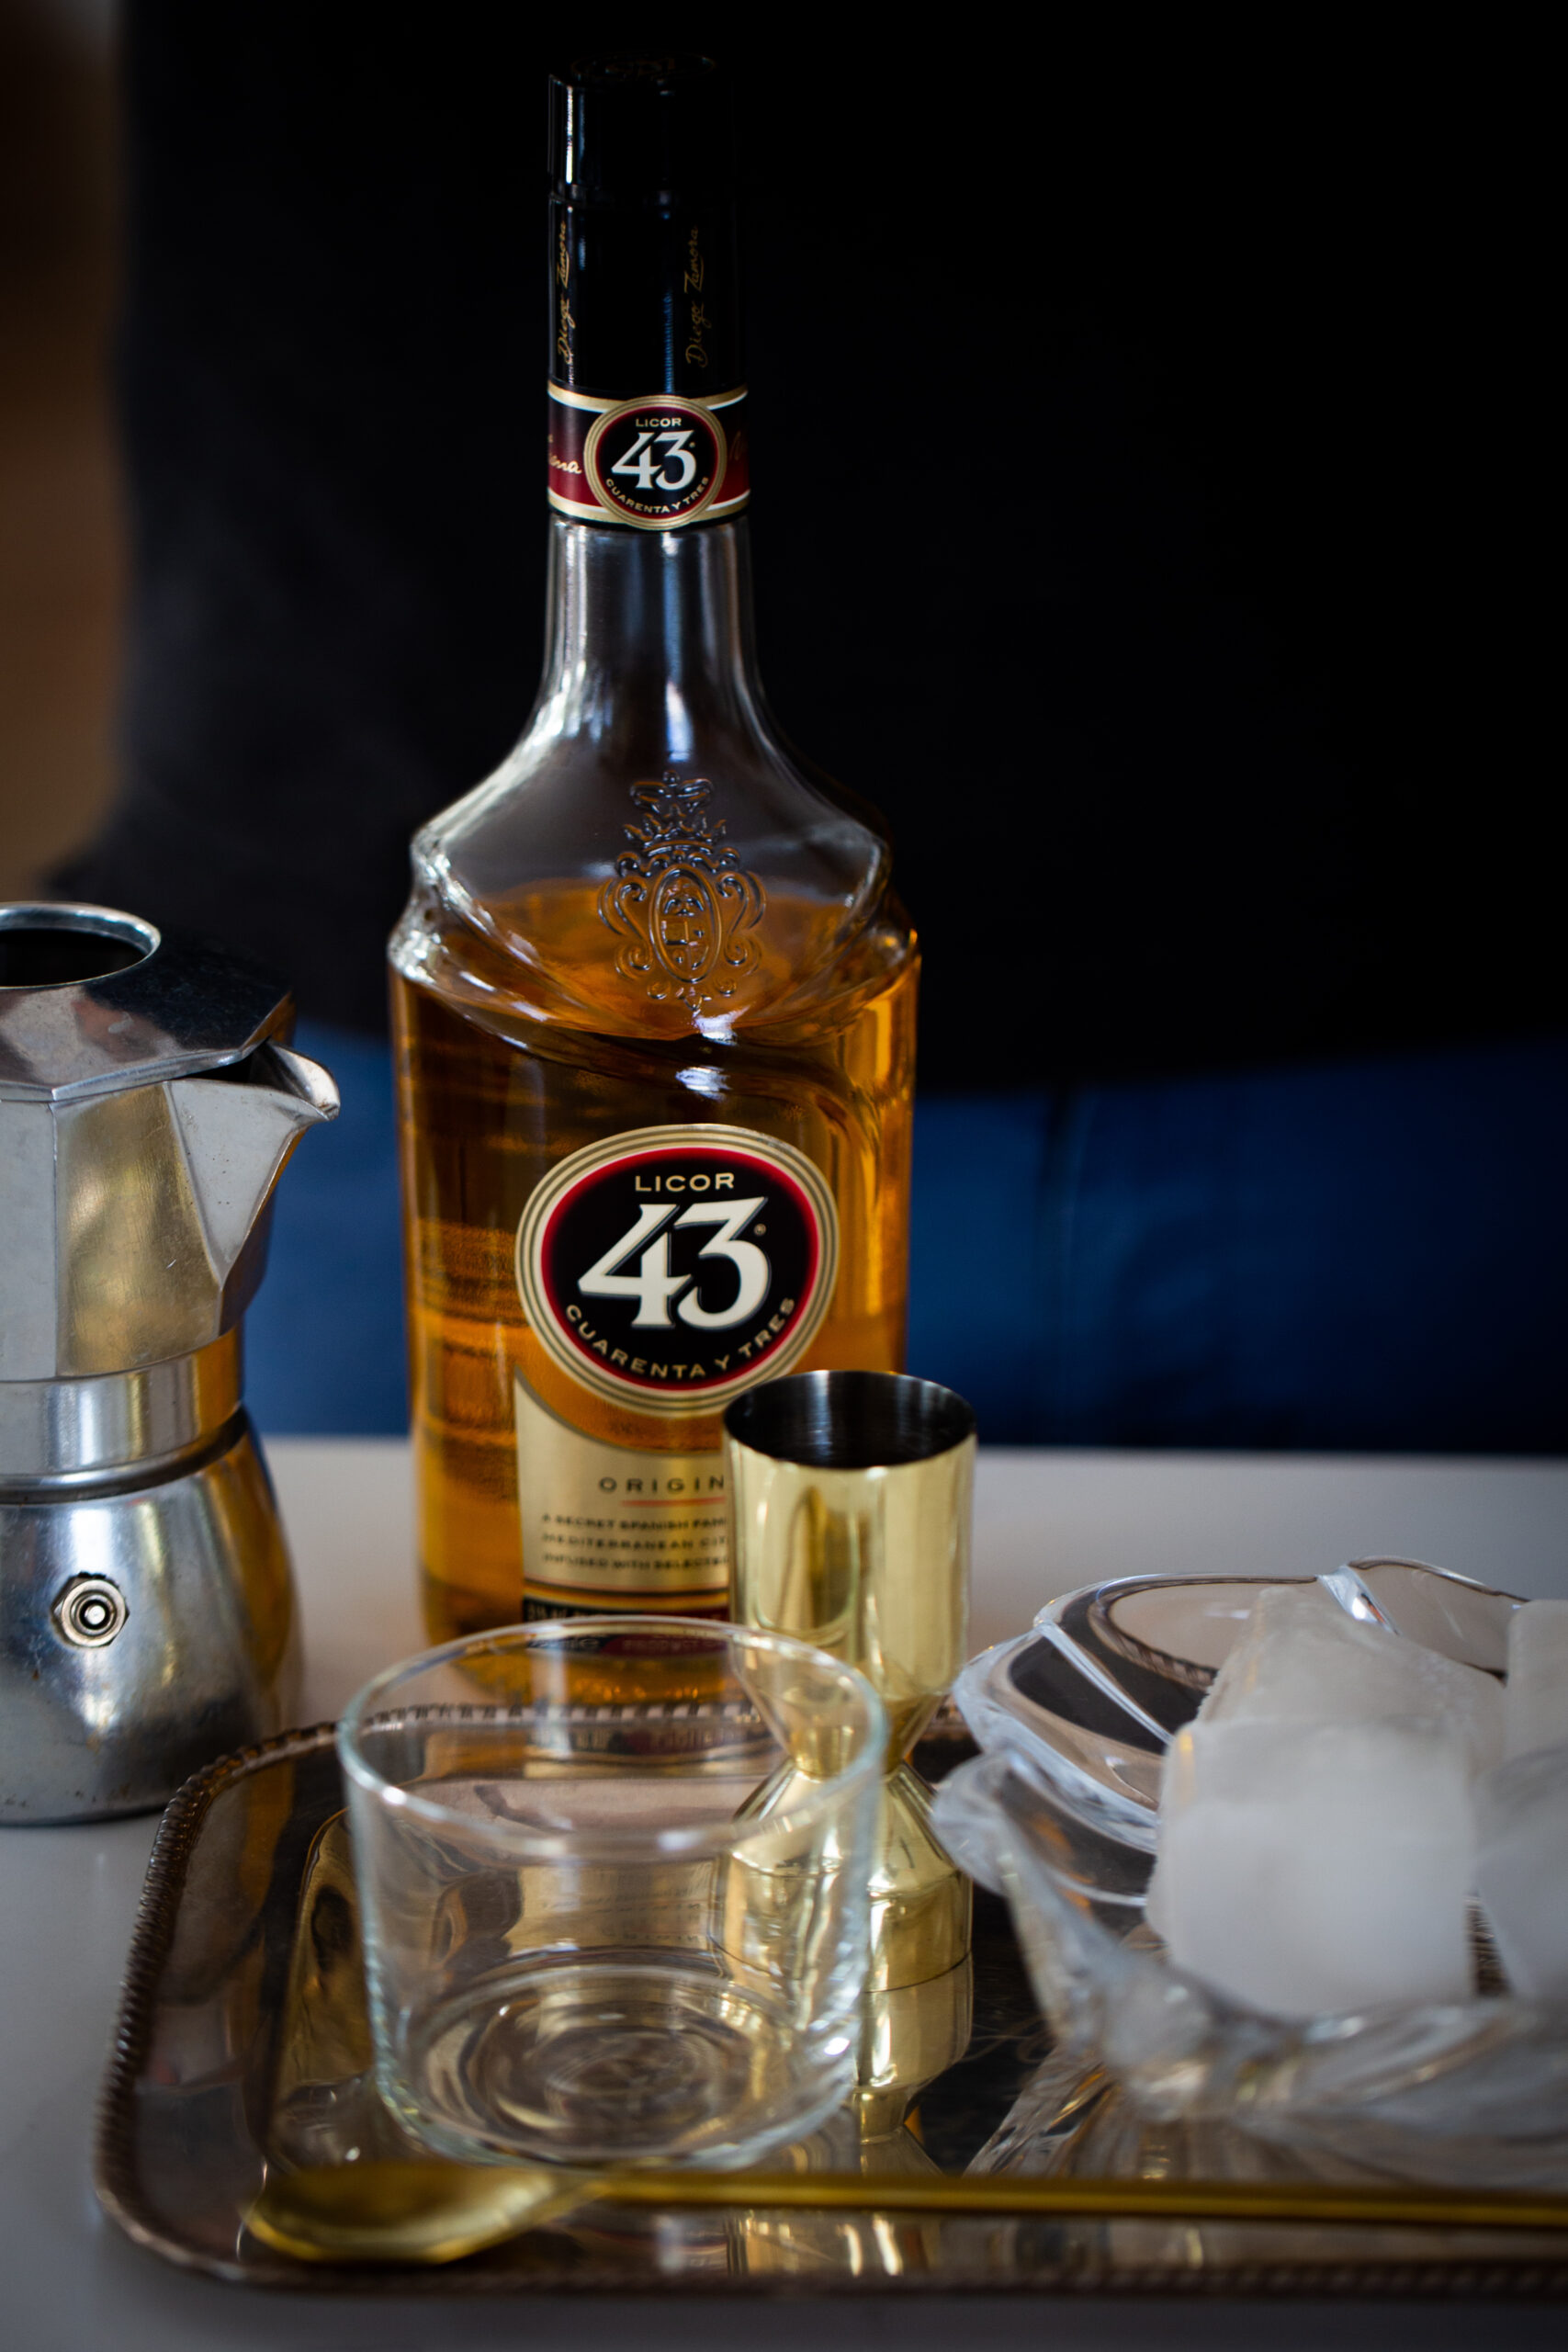 Una botella de licor 43 junto una charola con vaso y hielo y una cafetera de espresso